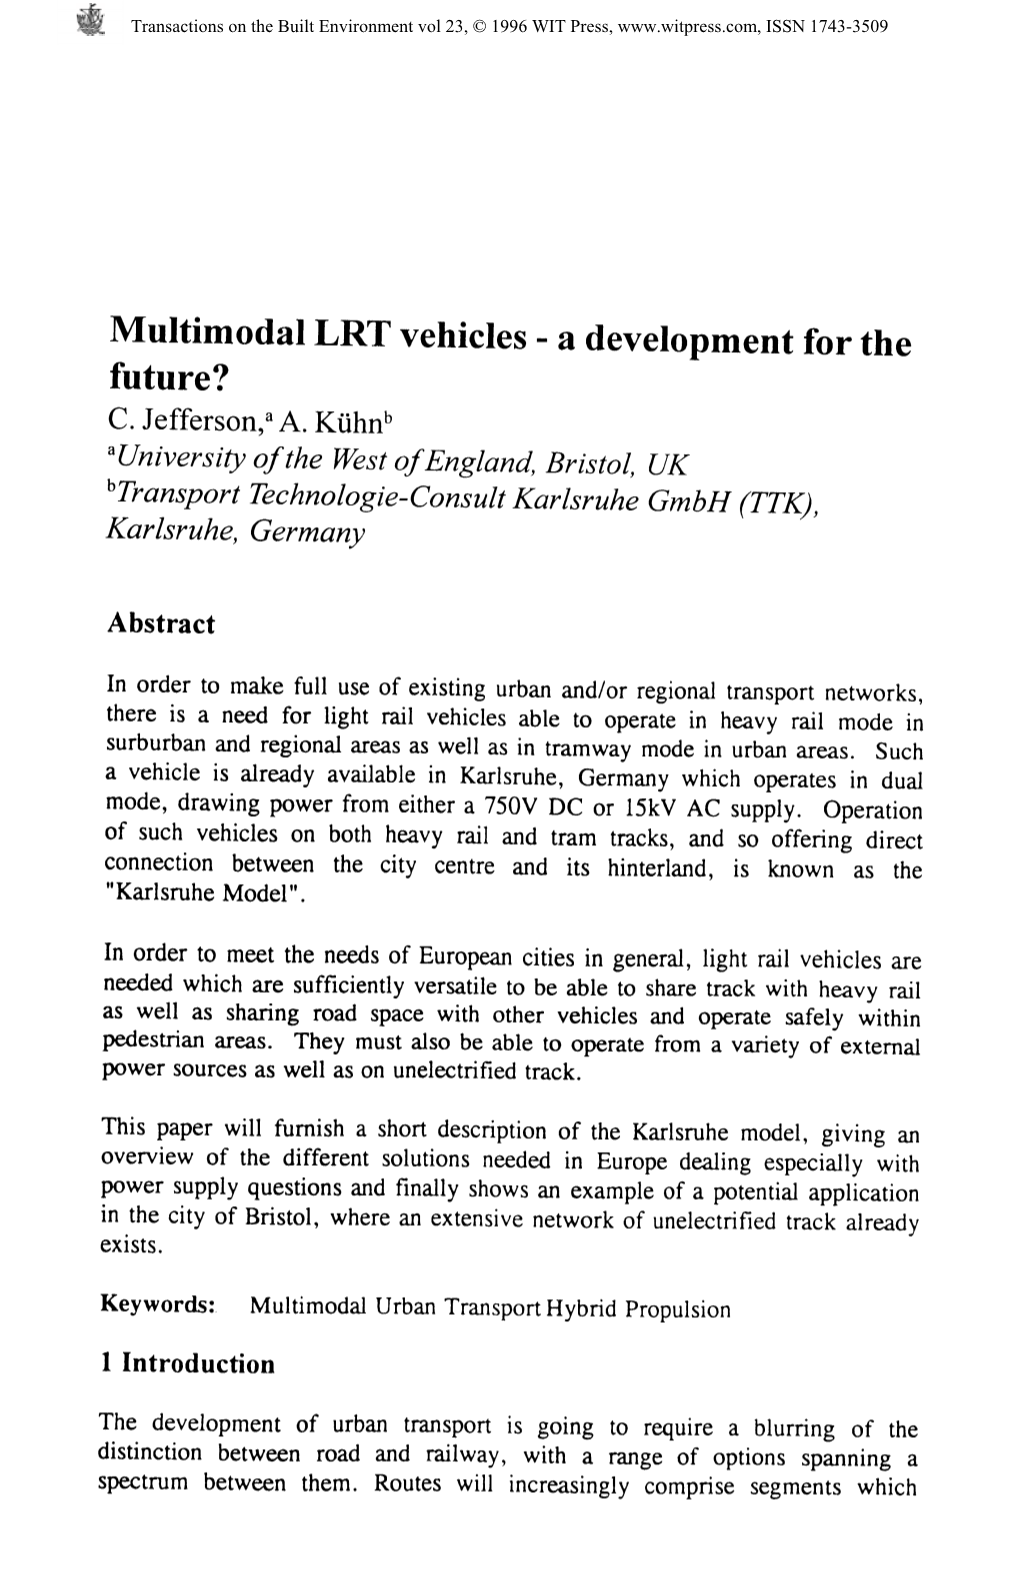 Multimodal LRT Vehicles - a Development for The